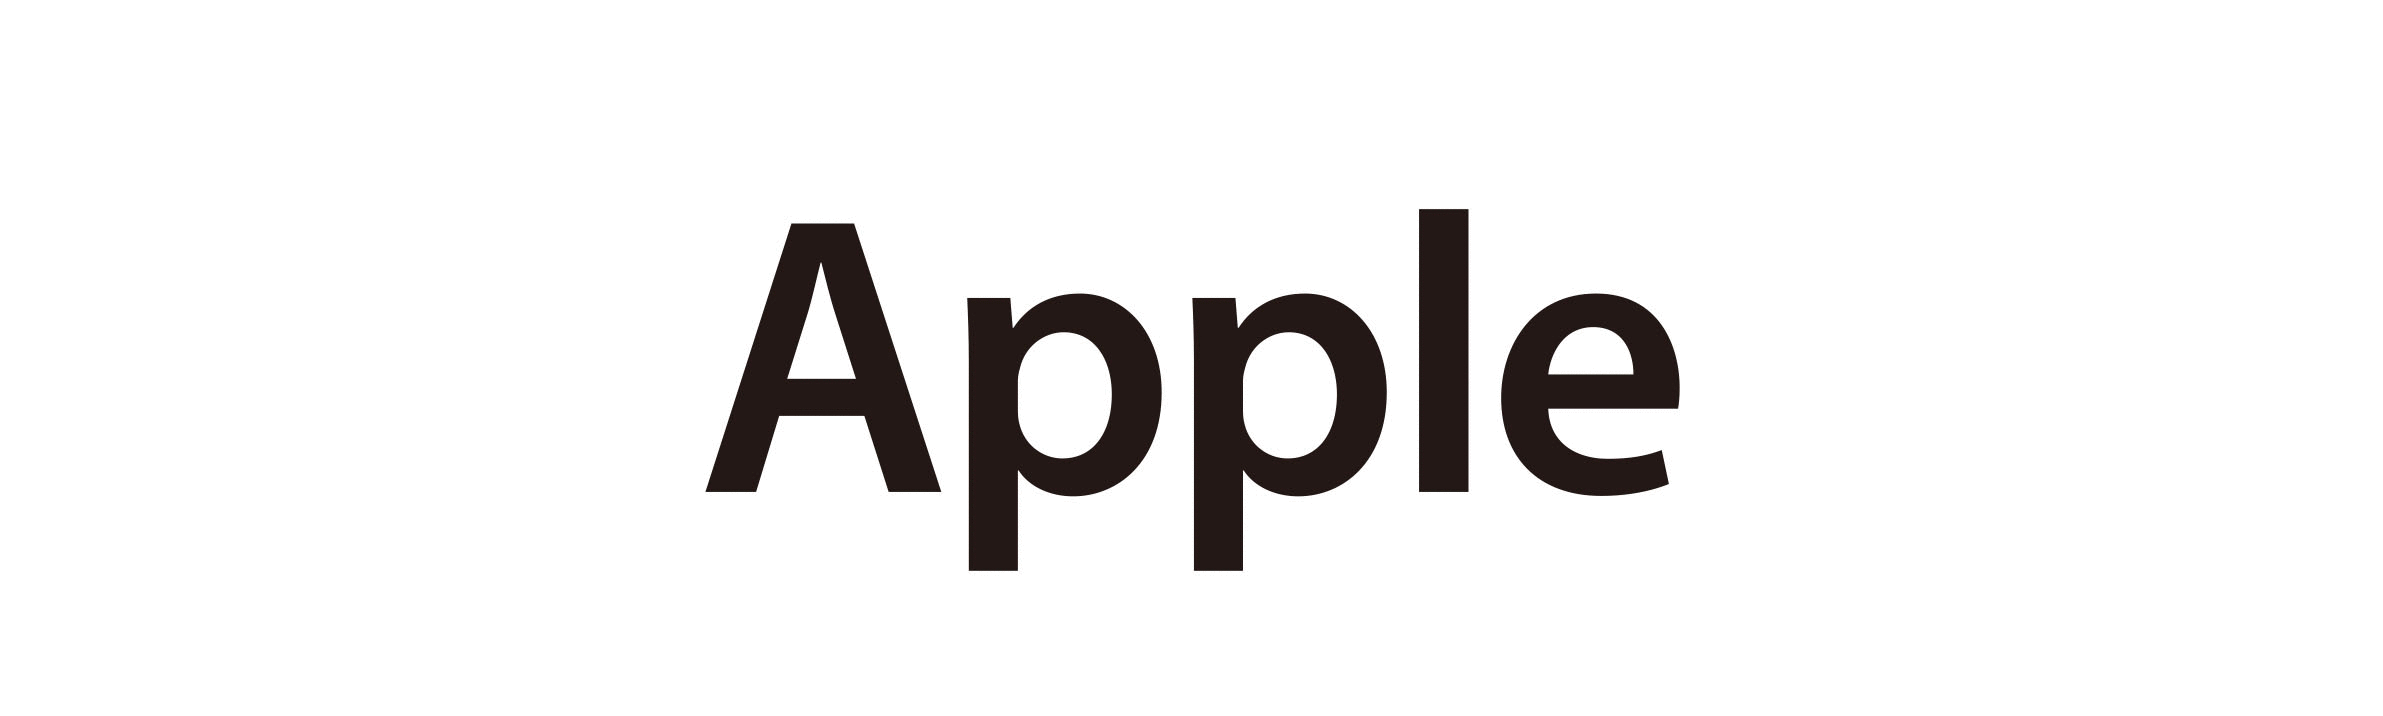 Appleリンク用ロゴ